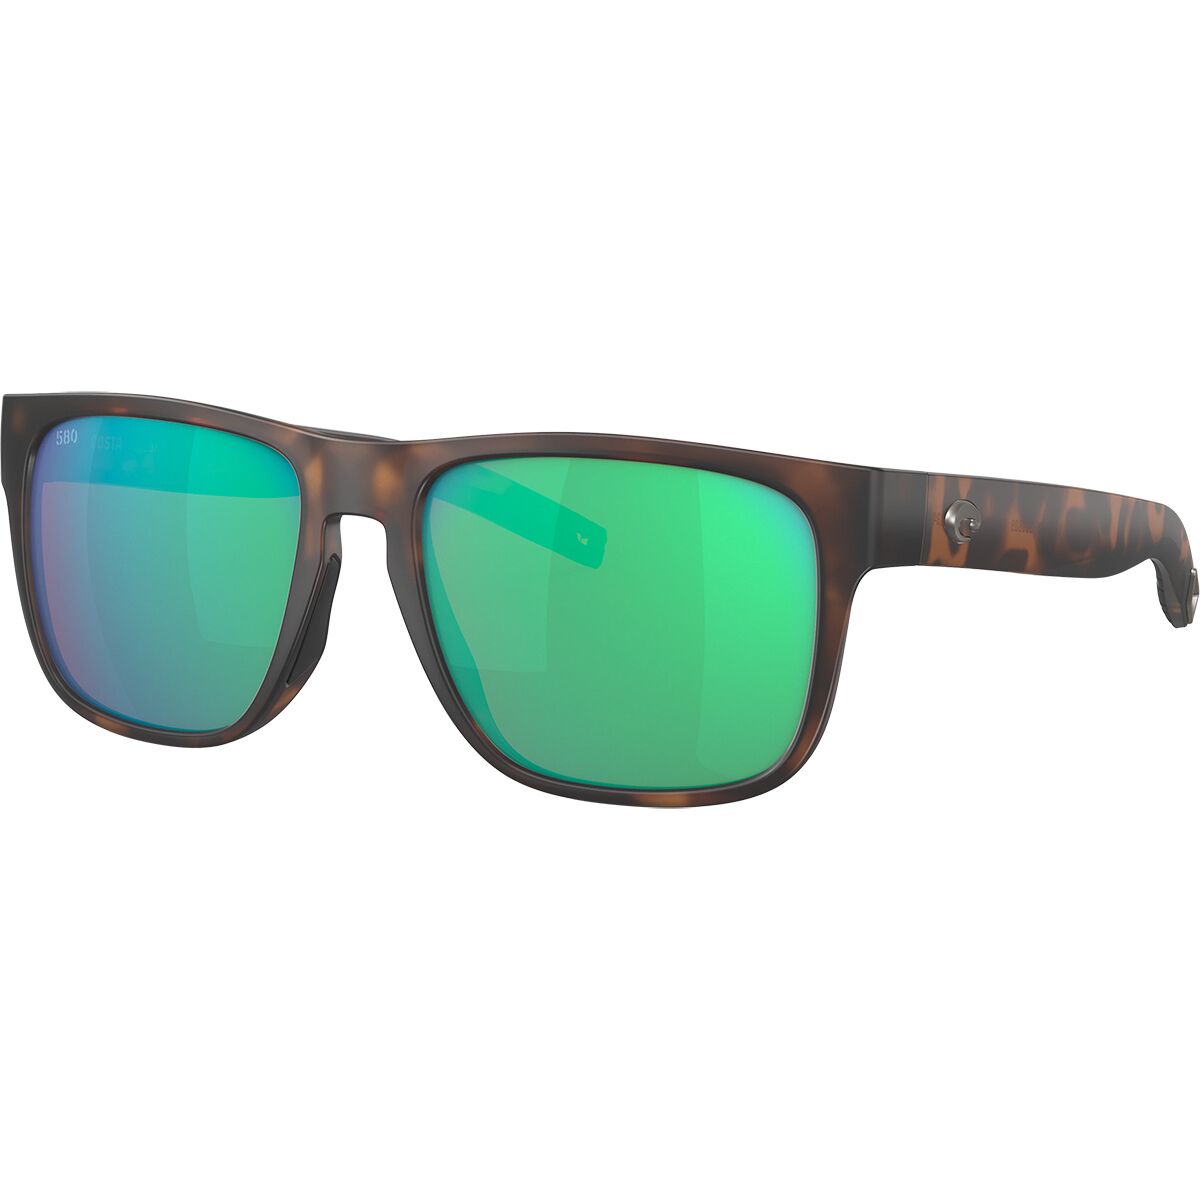 Costa Spearo 580G Polarized Sunglasses